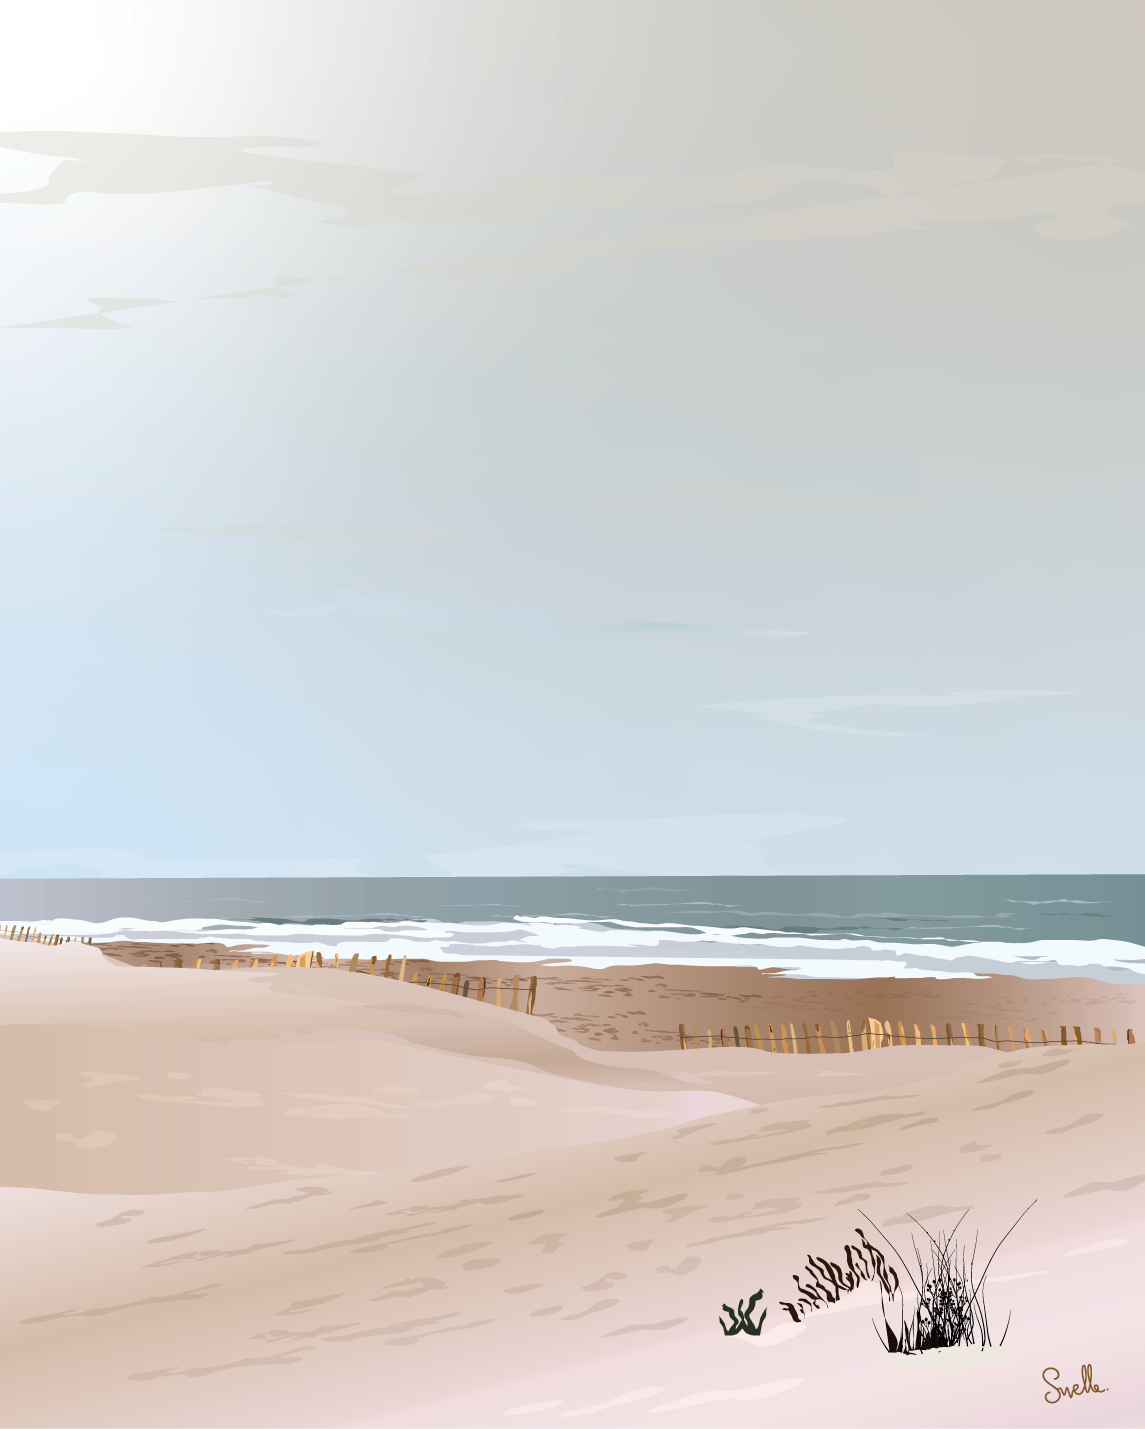 Au bout du chemin l'air marin se rapproche. D'abord la dune, puis la plage se dévoile. Il y a du vent, l'air est frais, il nous envahit. Autant de sensation qui me rappelle ces premières journées de plages au sortie de l'hiver, quand le printemps est bien installé. affiche de plage